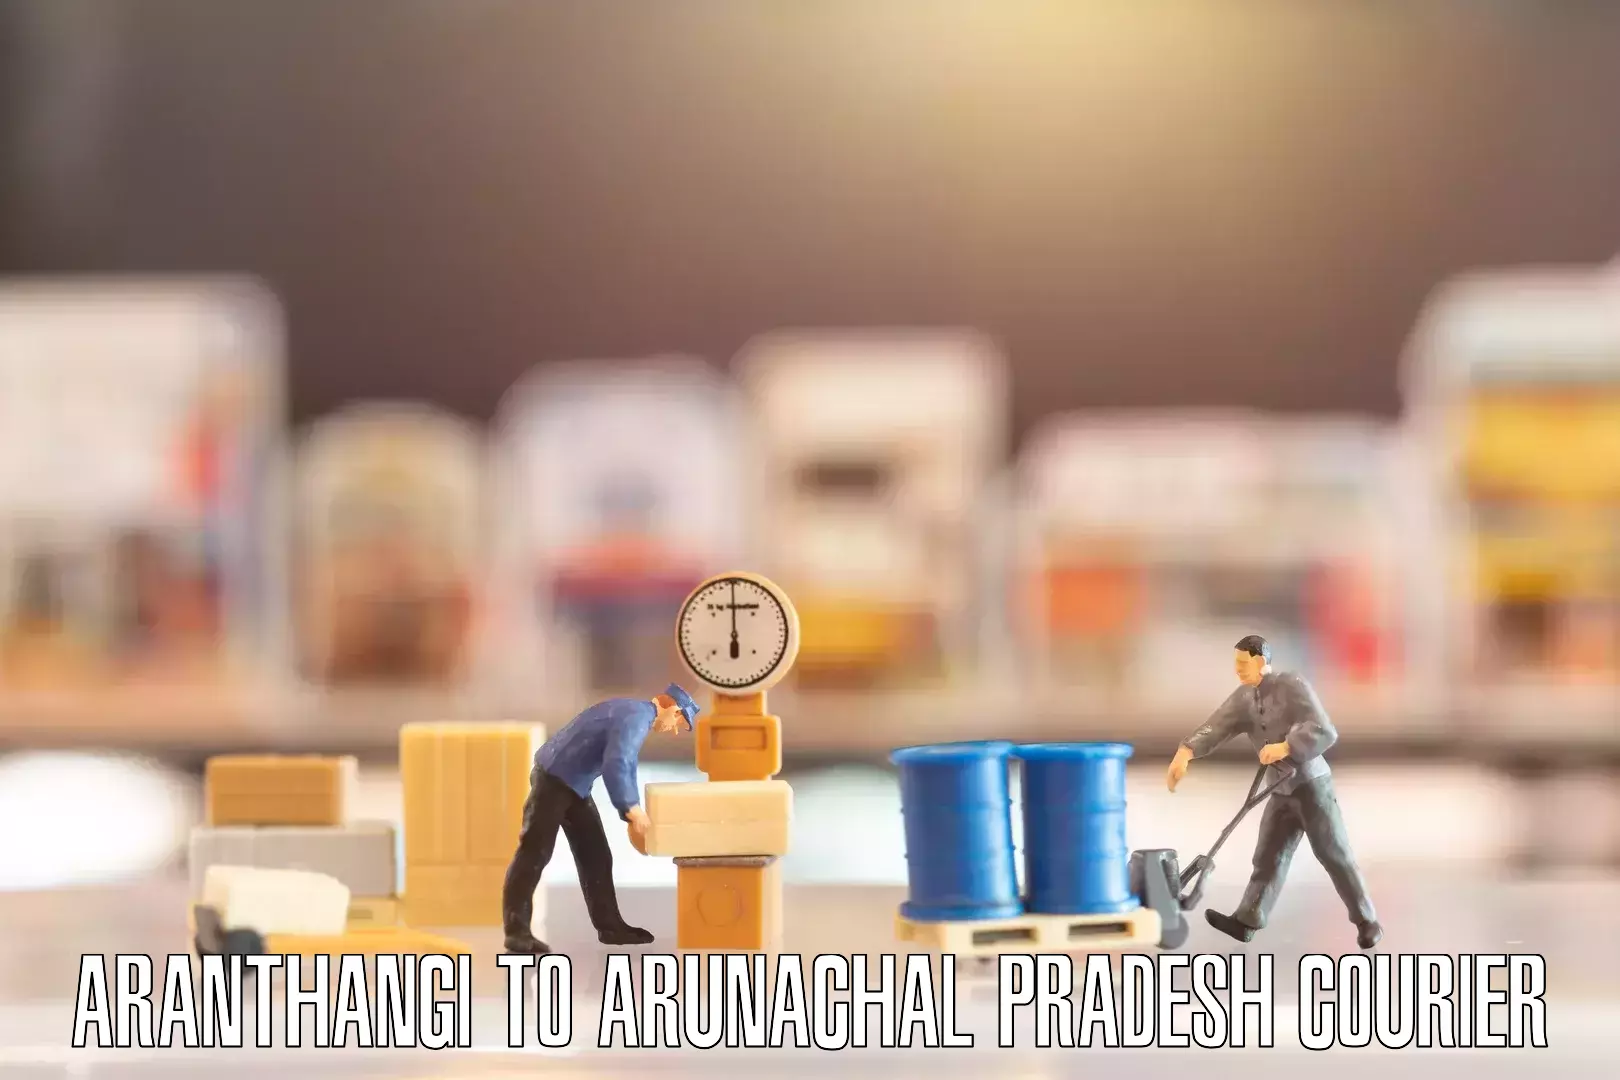 Personalized moving and storage Aranthangi to Kharsang